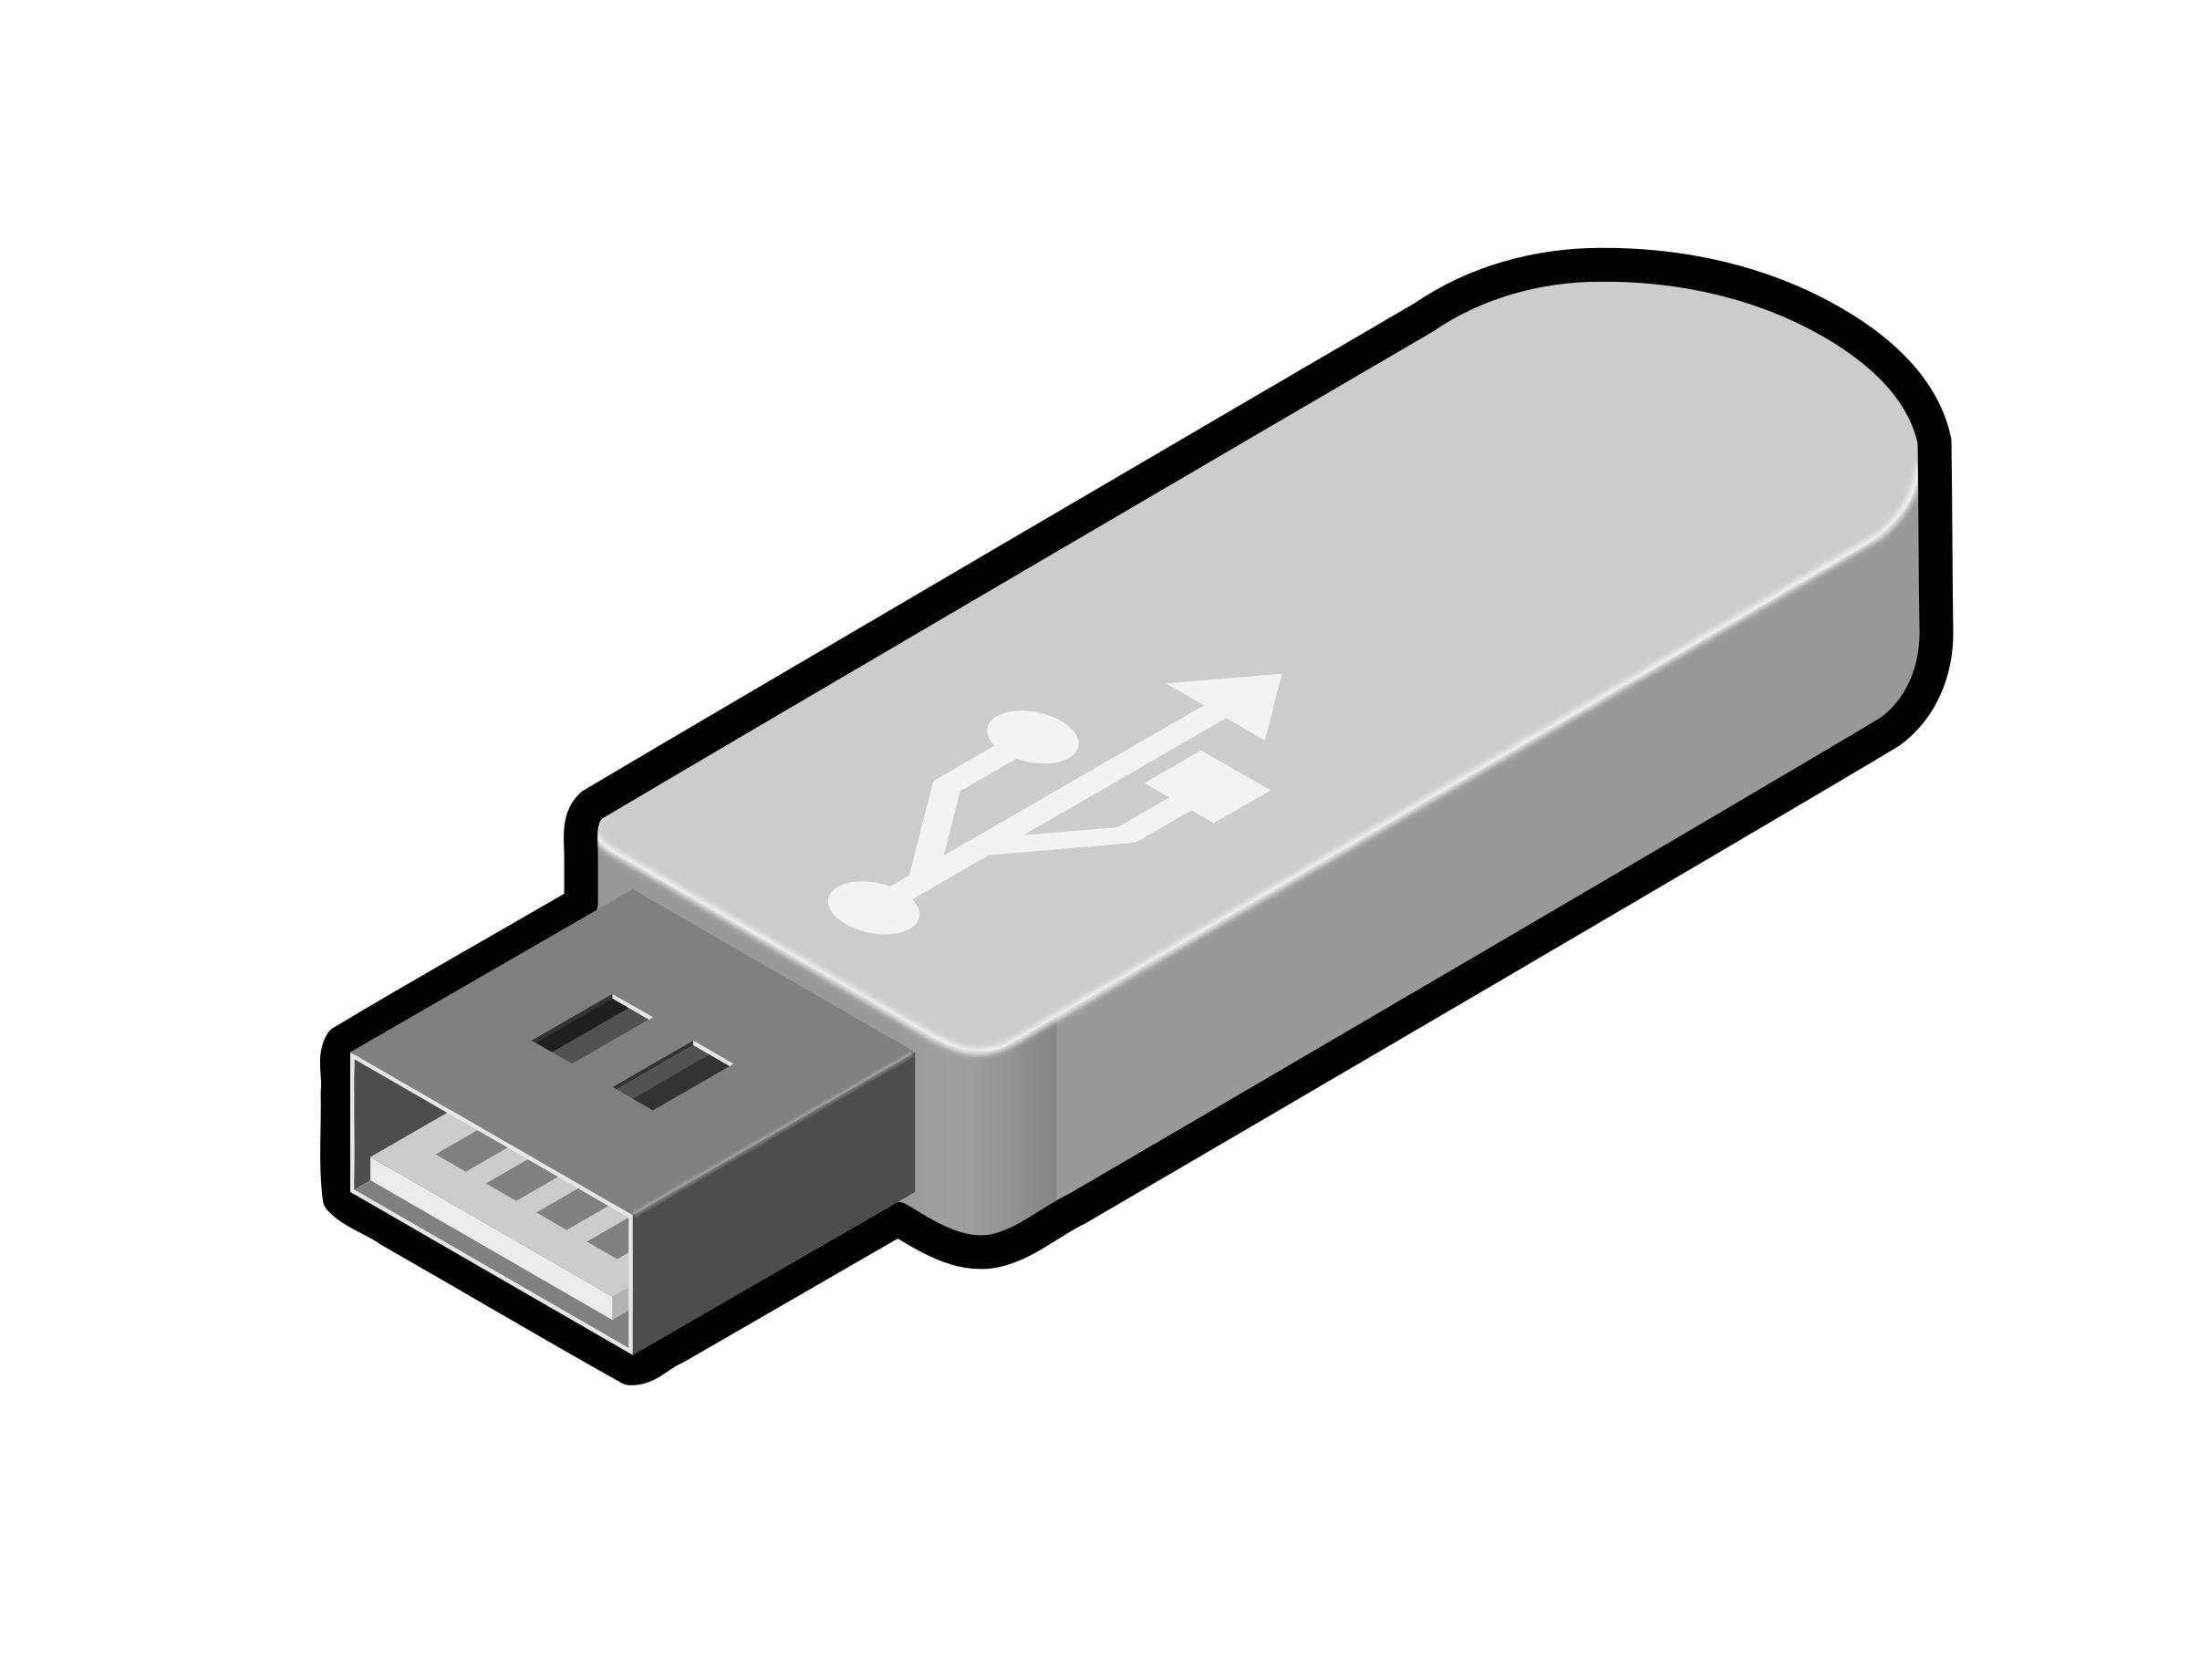 USB Thumb Drive 2 png